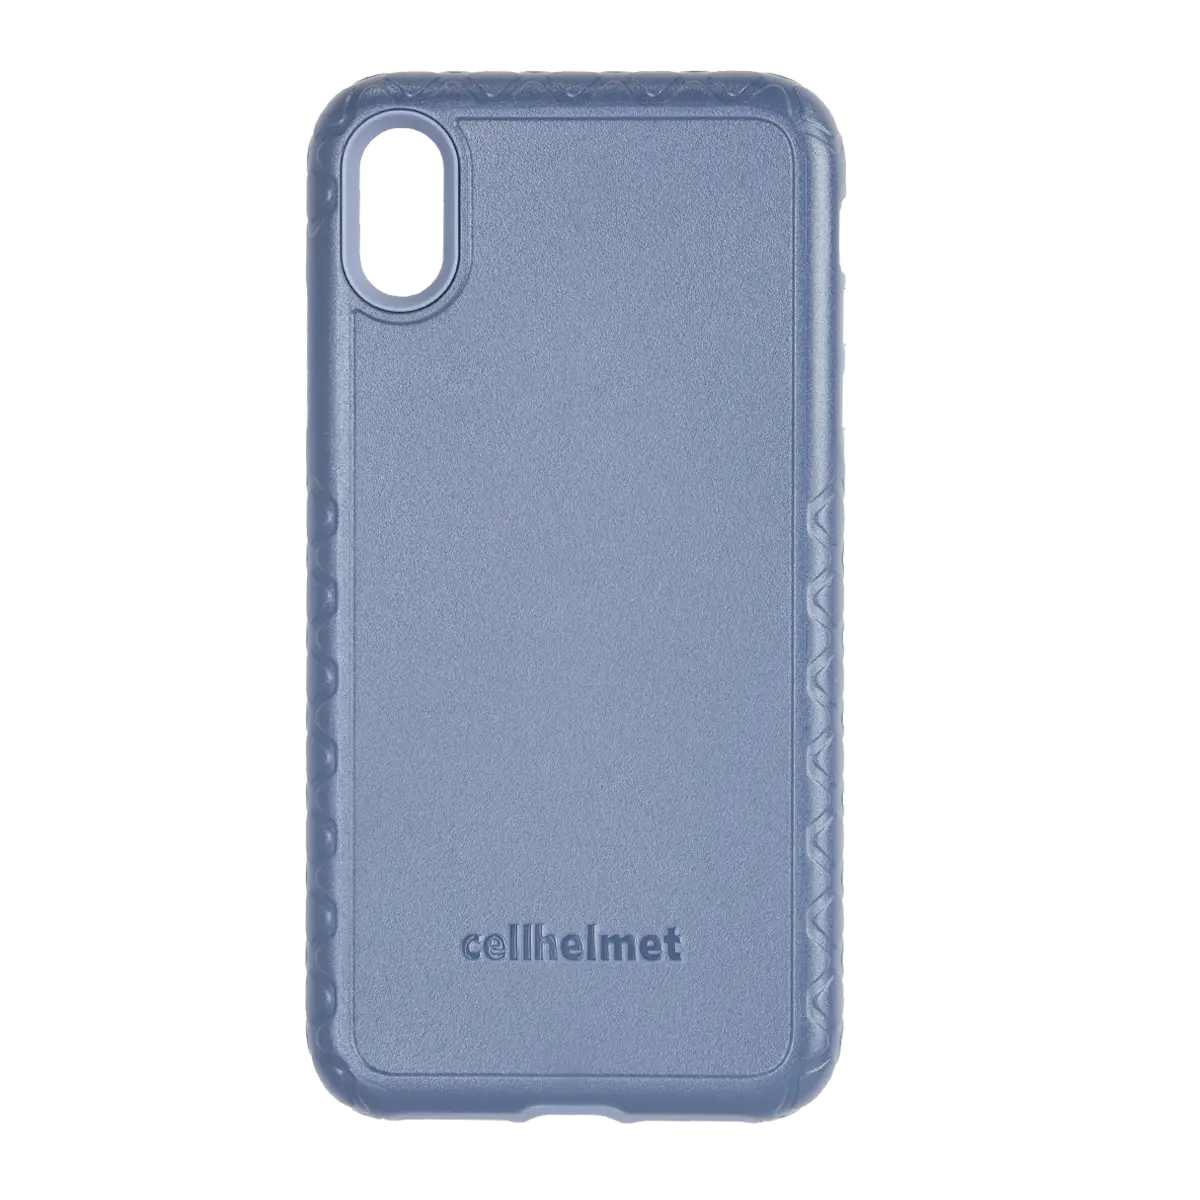 cellhelmet Blue Custom Case for iPhone XS Max